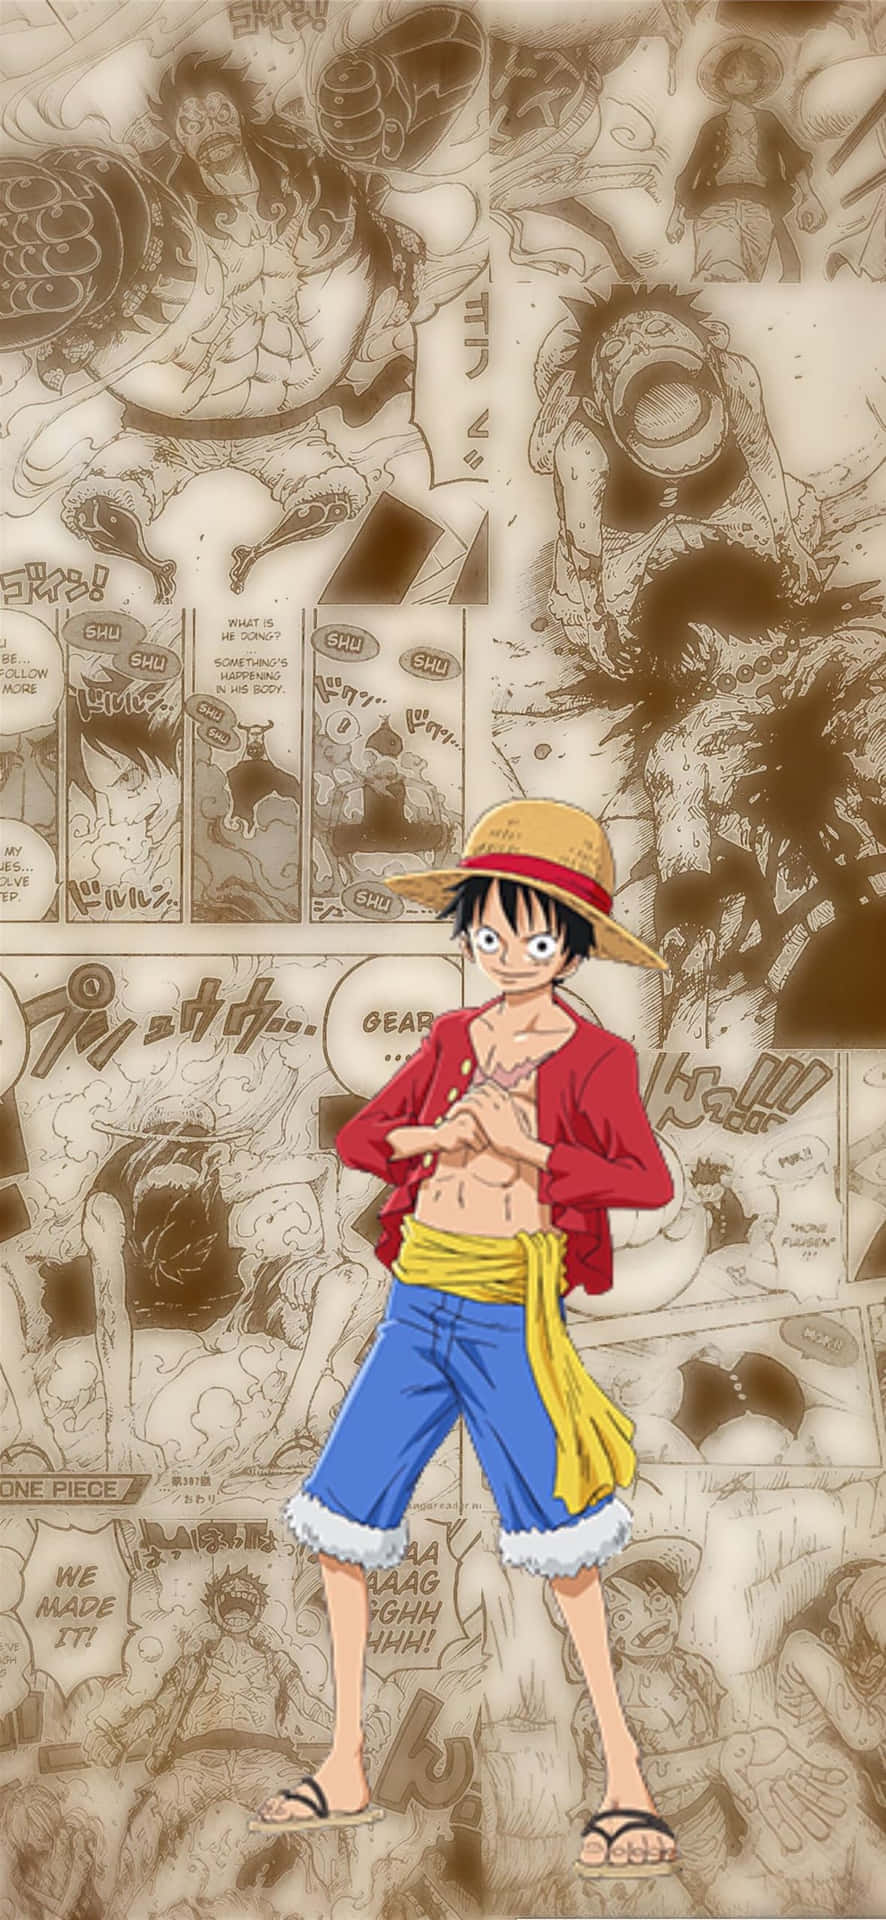 Luffy, hovedpersonen i den populære anime-serie One Piece, er klar til at tage ud på et episk eventyr. Wallpaper